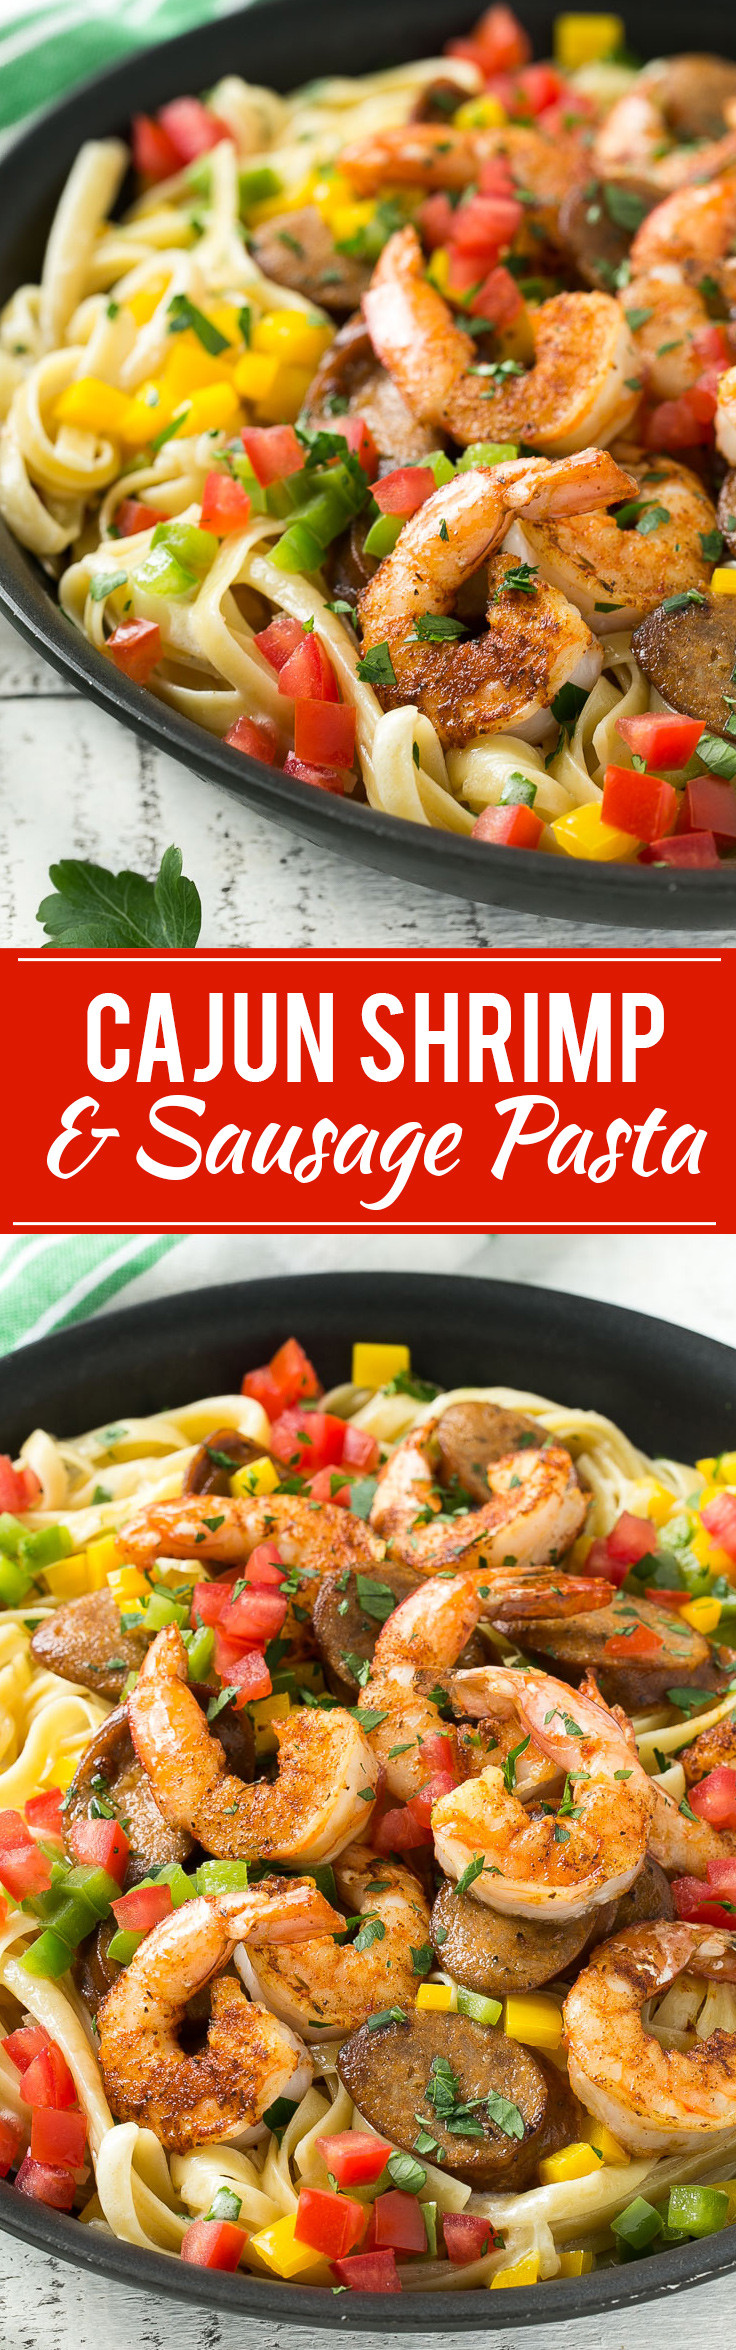 Shrimp And Sausage Pasta
 This recipe for Cajun shrimp and sausage pasta is sauteed